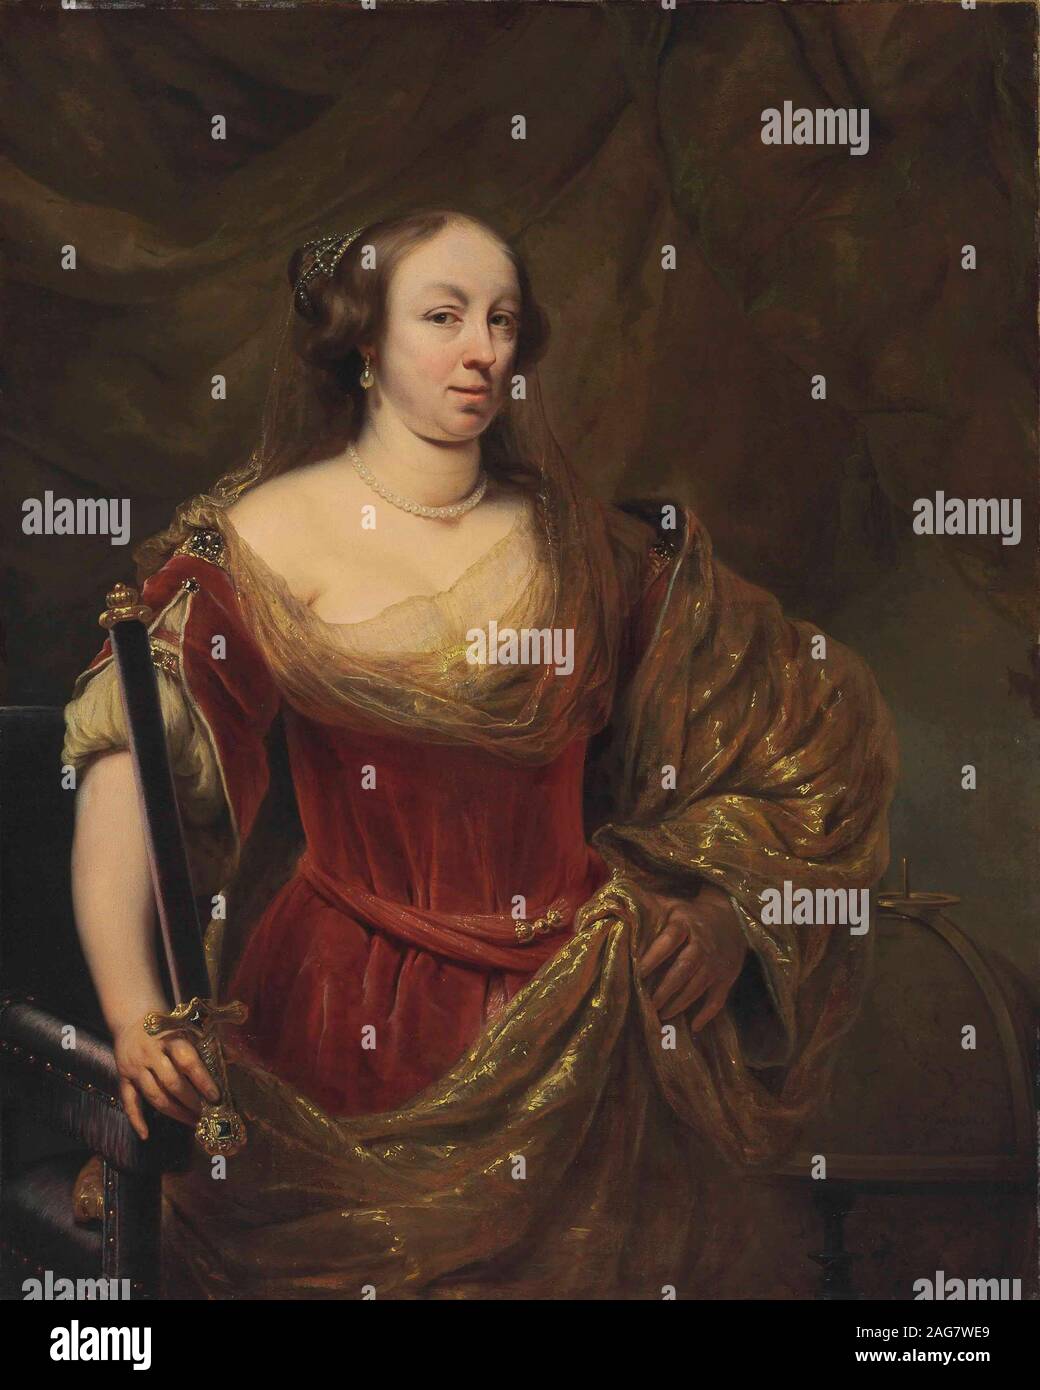 Ritratto di Maria Luigia Gonzaga (1611-1667), regina di Polonia. Collezione privata. Foto Stock